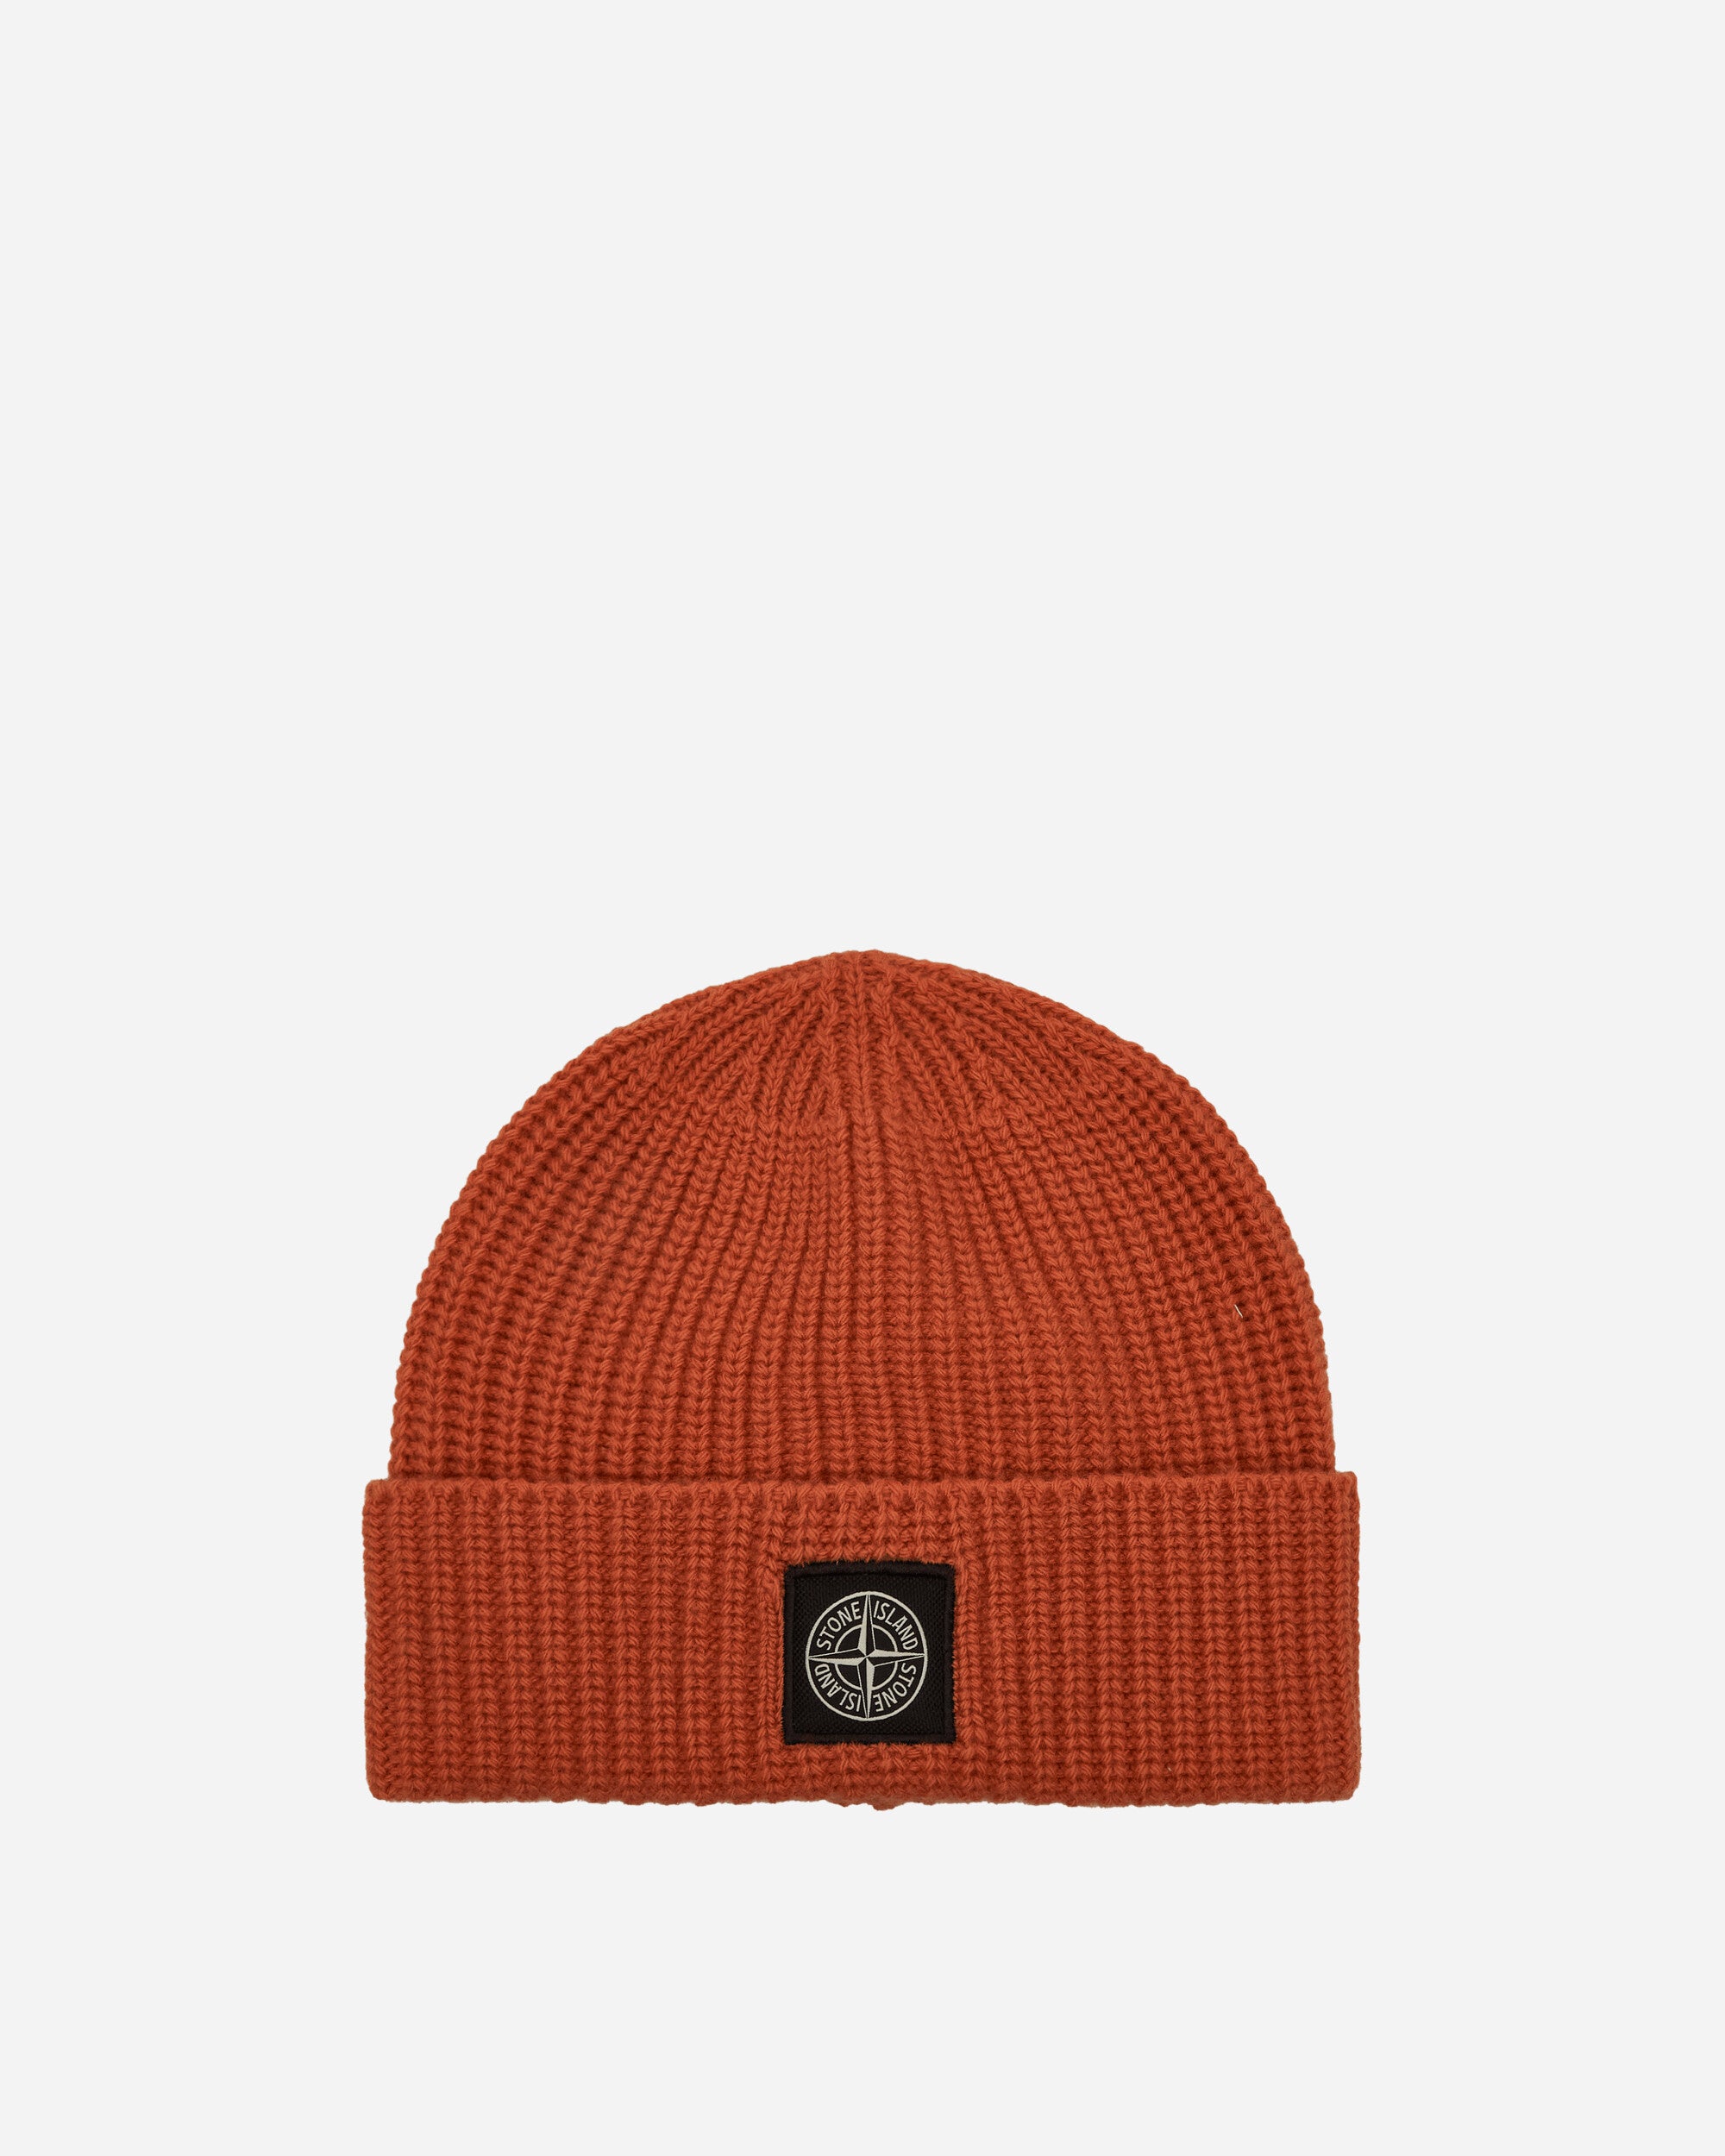 Stone Island Wool Beanie Orange Hats Beanies 8115N10B5 V0032